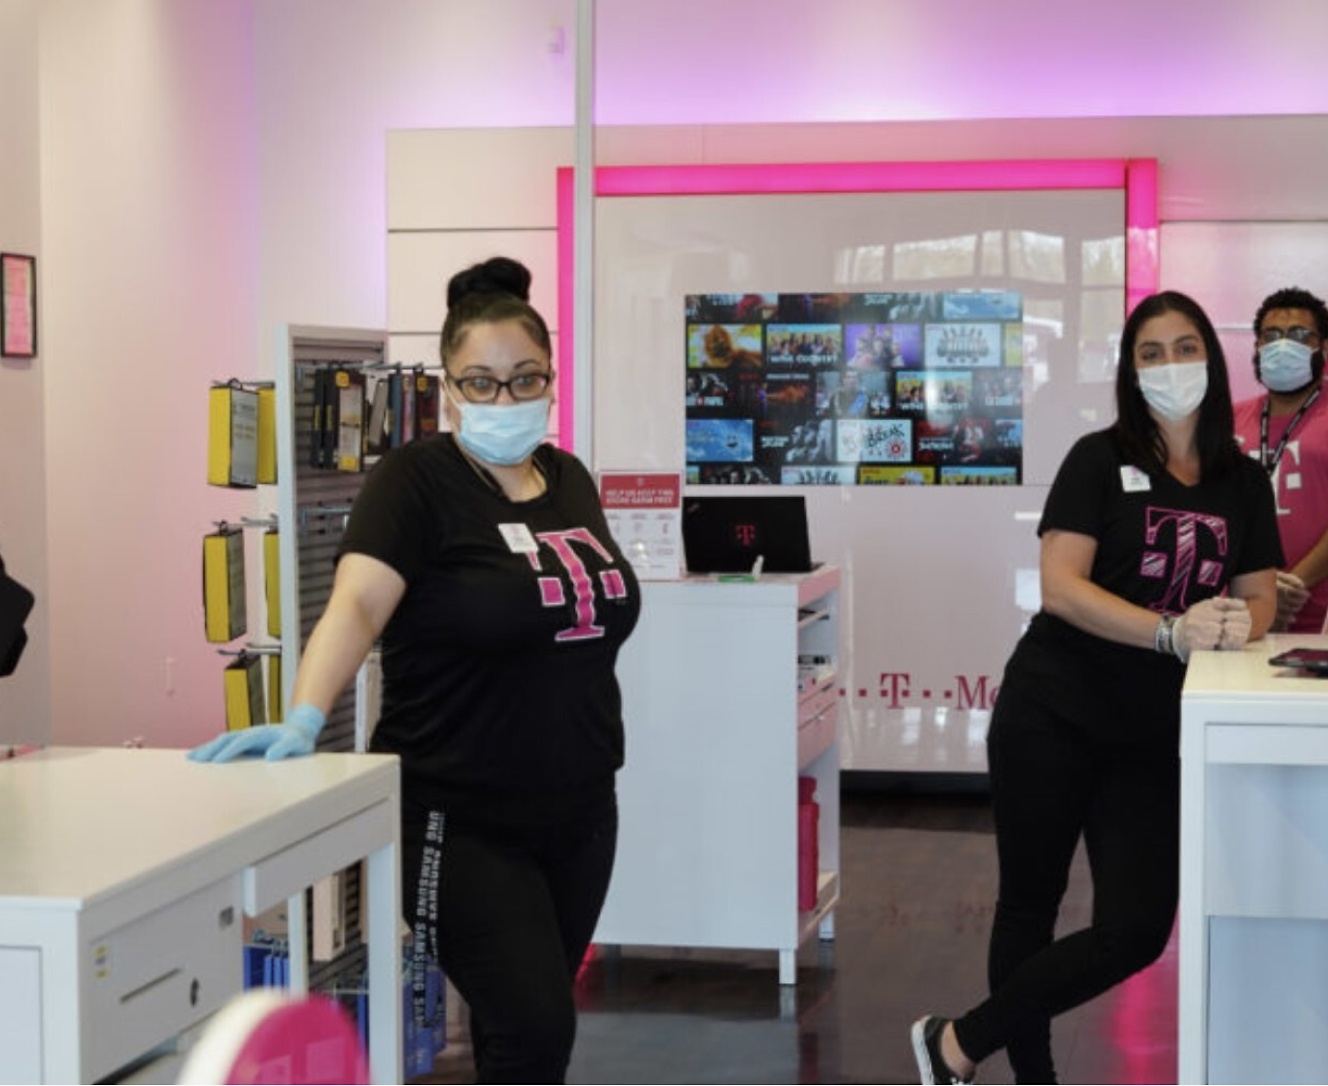 Grupa osób z maskami na twarzach w sklepie.